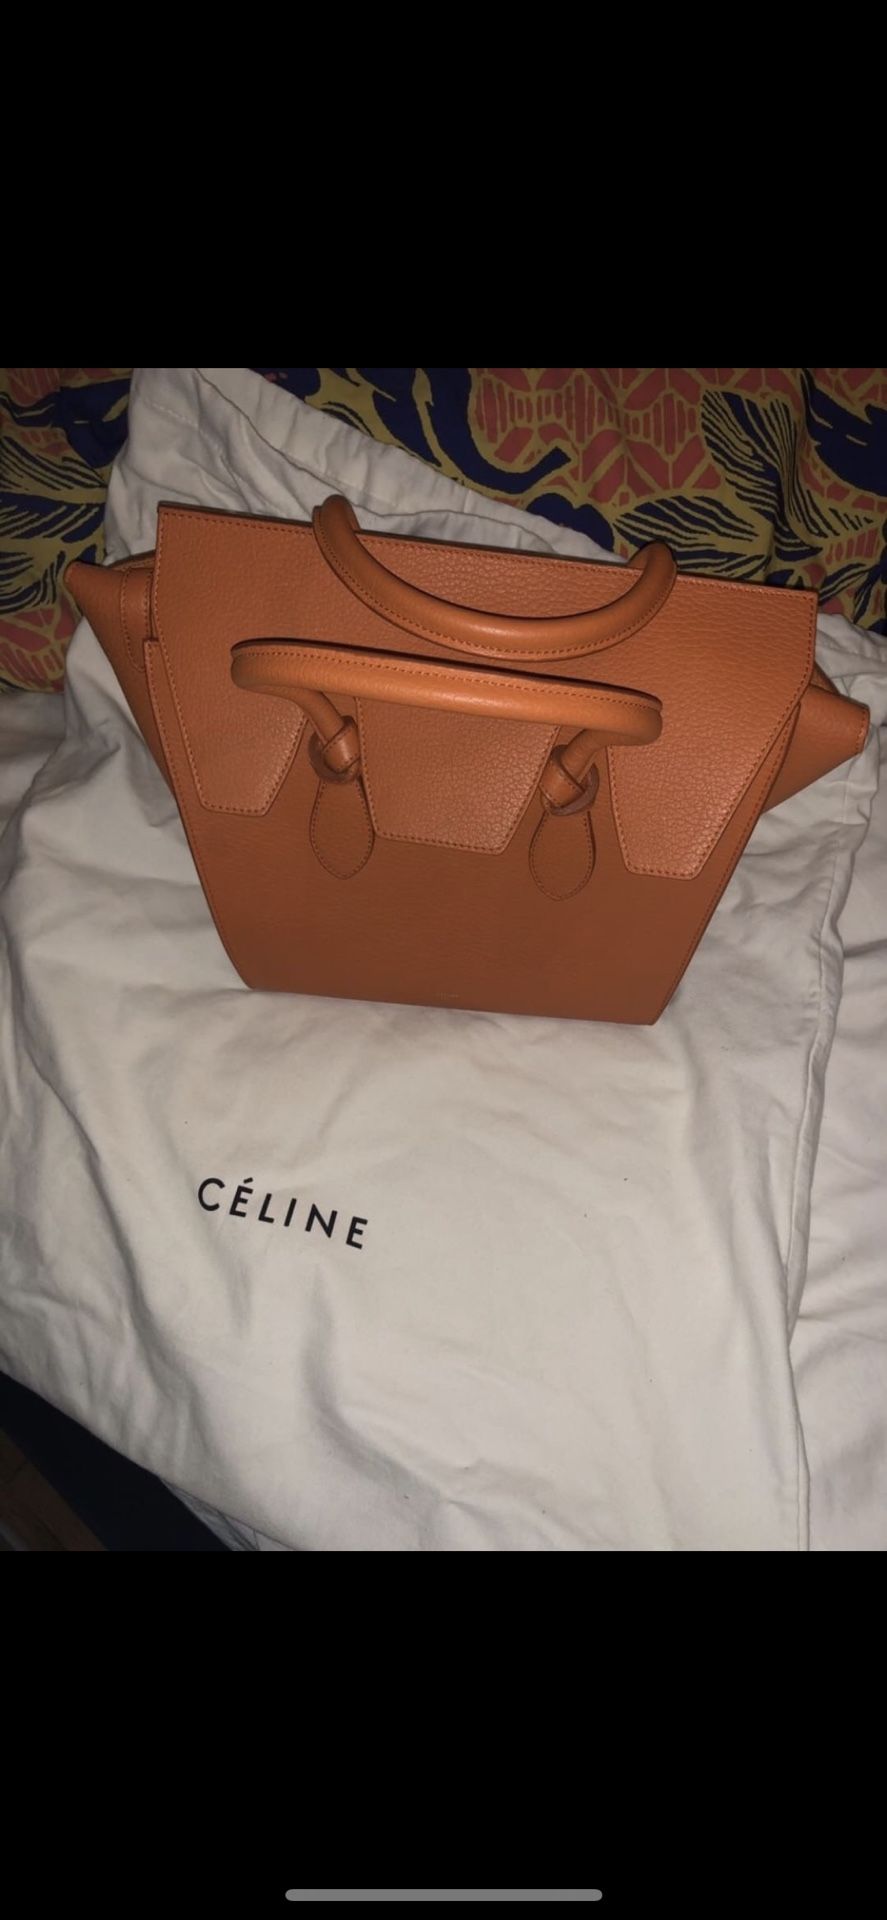 Authentic Celine Knot Bag